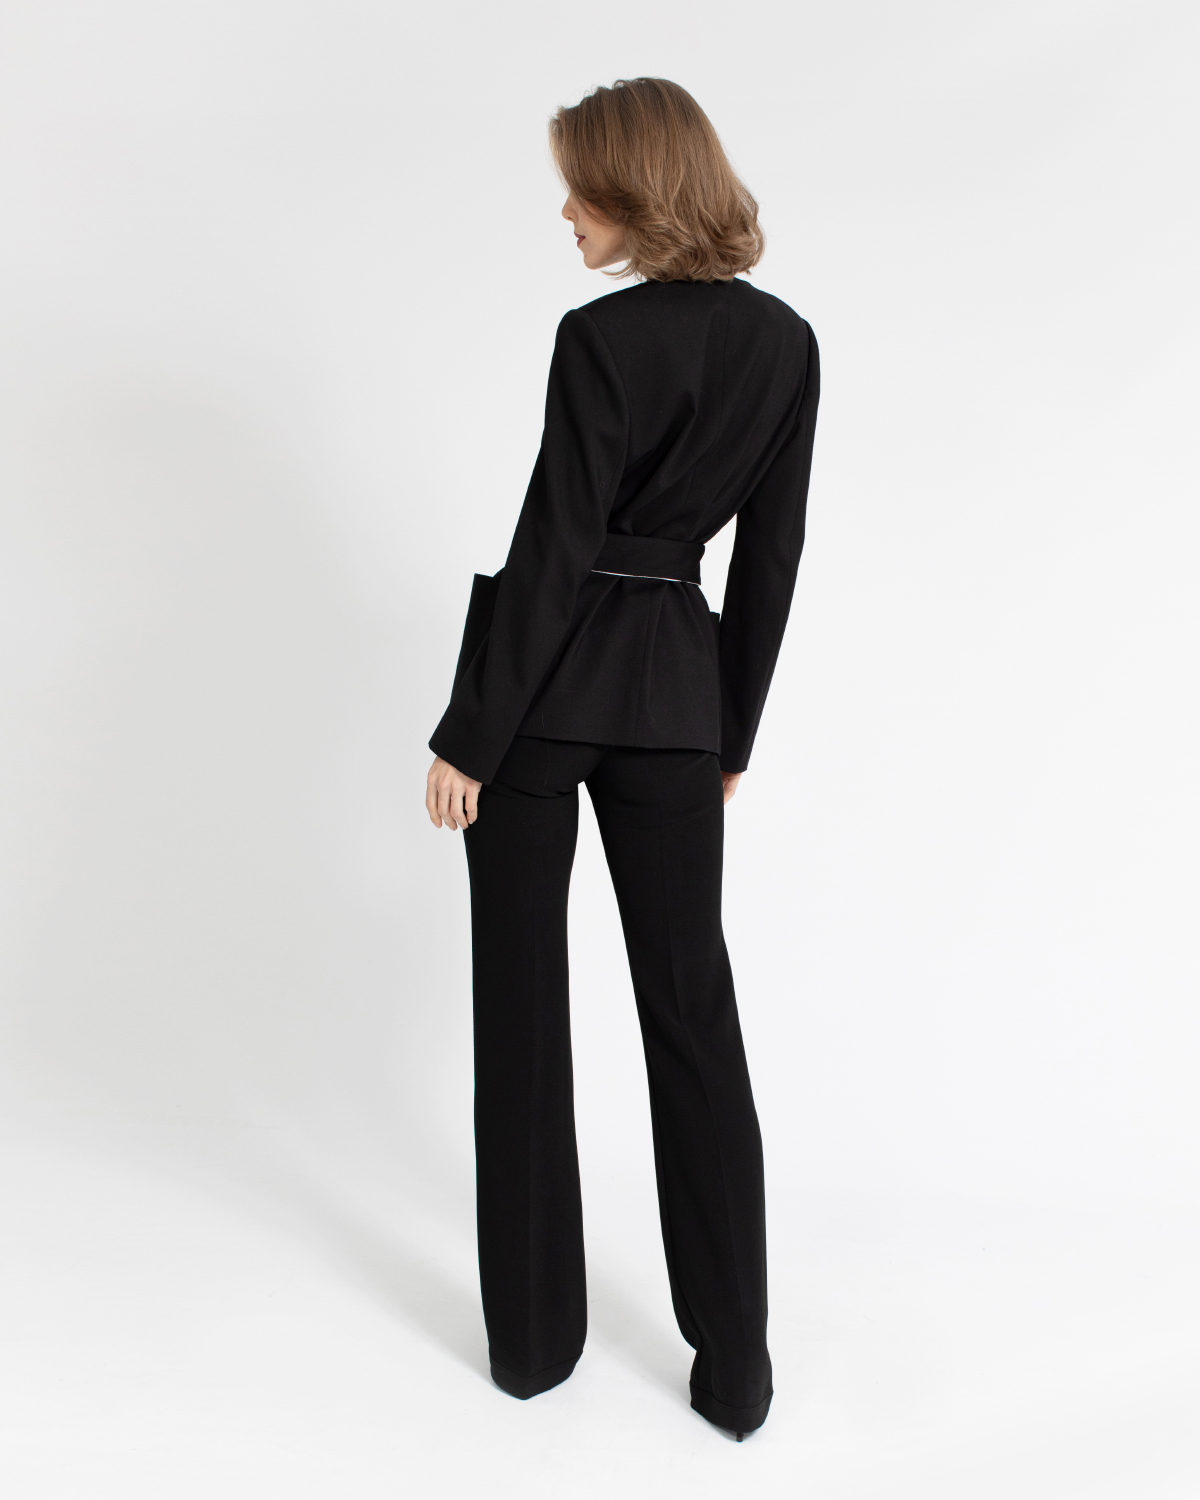 Black stretch cuffed wide-leg trousers | Private sale, Sale, -30% | Genny